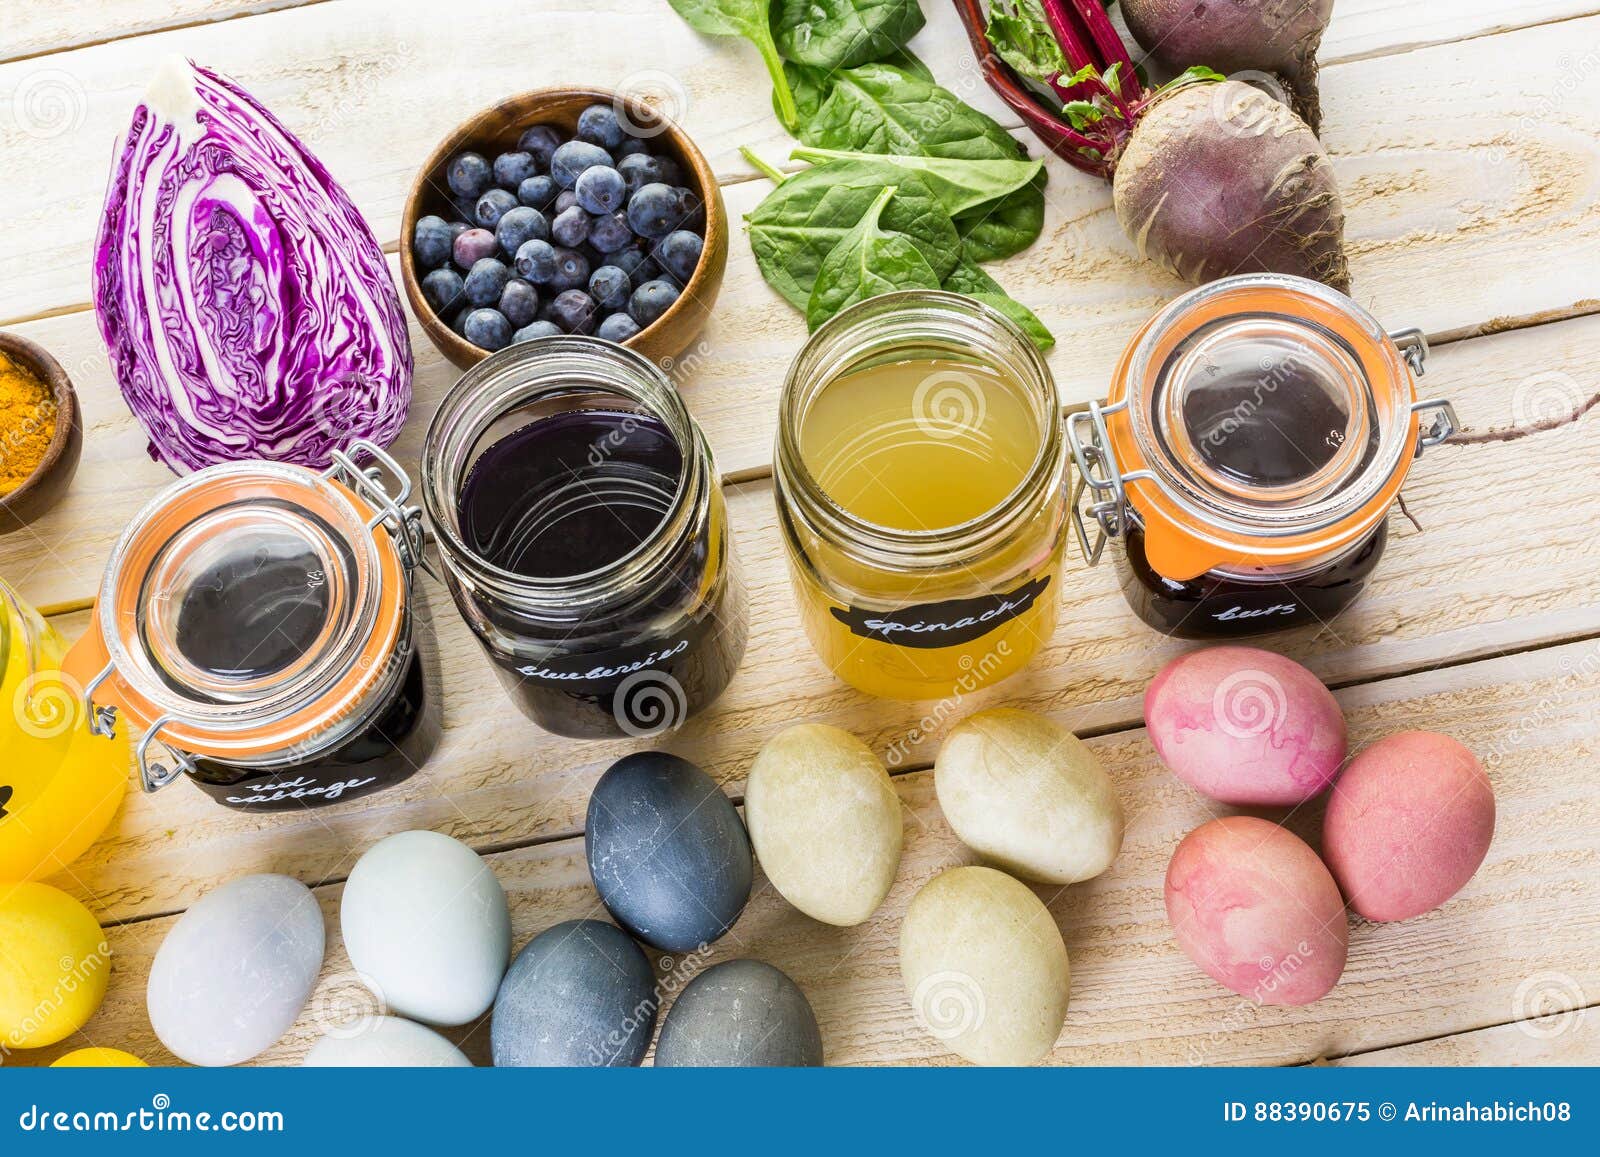 Пищевой краситель для яиц можно. Красители пищевые натуральные. Натуральные природные красители. Натуральные красители из овощей. Натуральные красители для глазури.